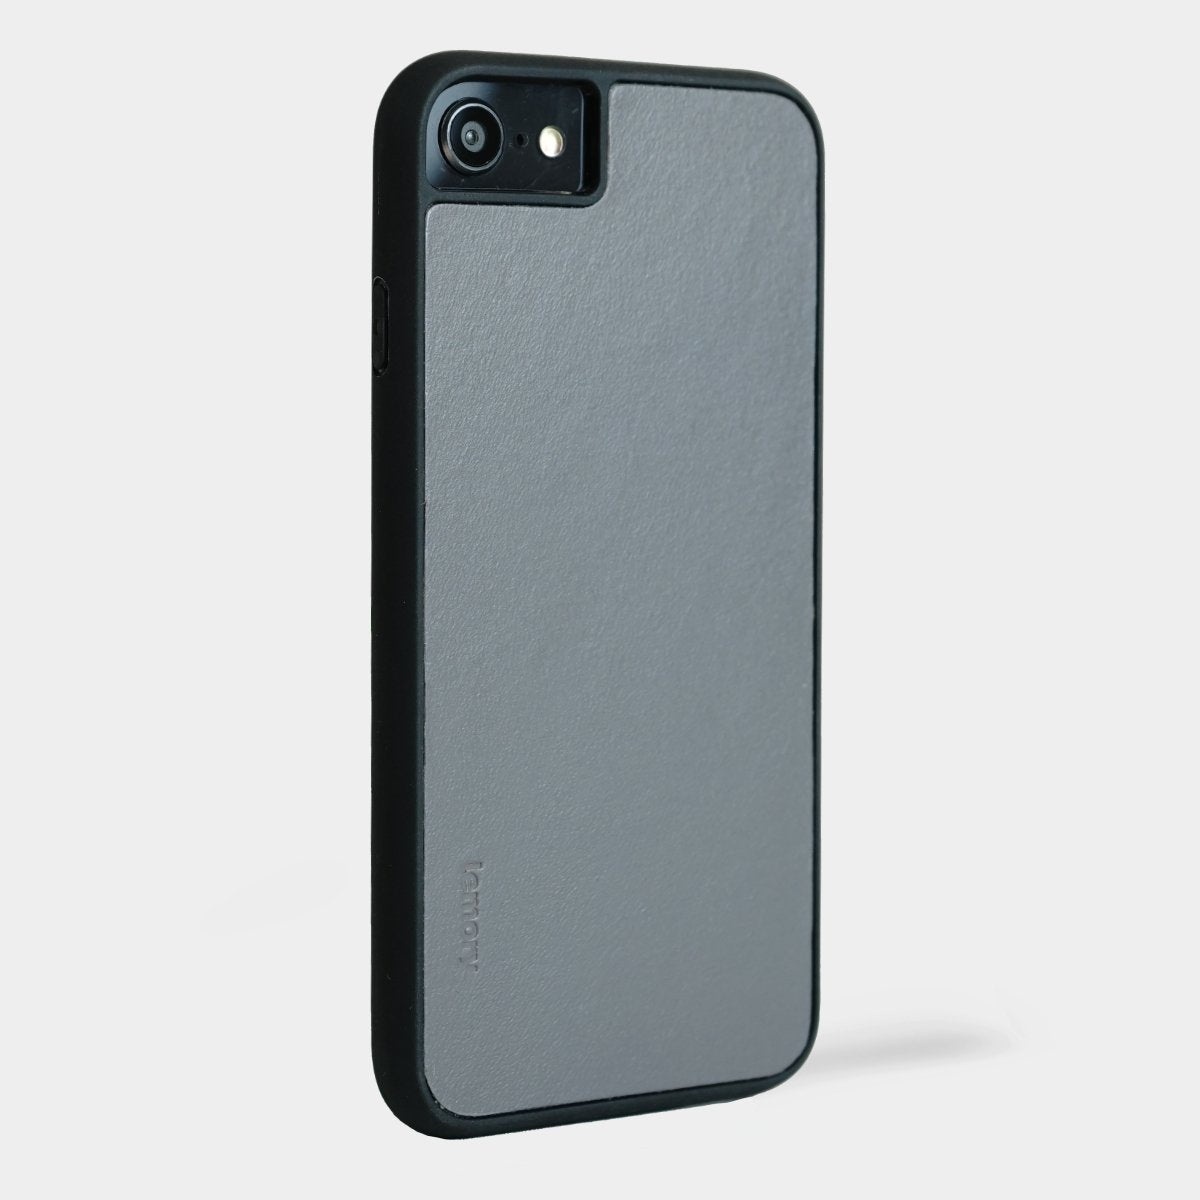 Prémiový kožený kryt Lemory PROTECT na mobil Apple iPhone 7 / 8 / SE 2020 - Šedý (Prémiový kožený kryt, pouzdro, obal Lemory PROTECT na mobilní telefon Apple iPhone 7 / Apple iPhone 8 / Apple iPhone SE 2020 - Šedý)